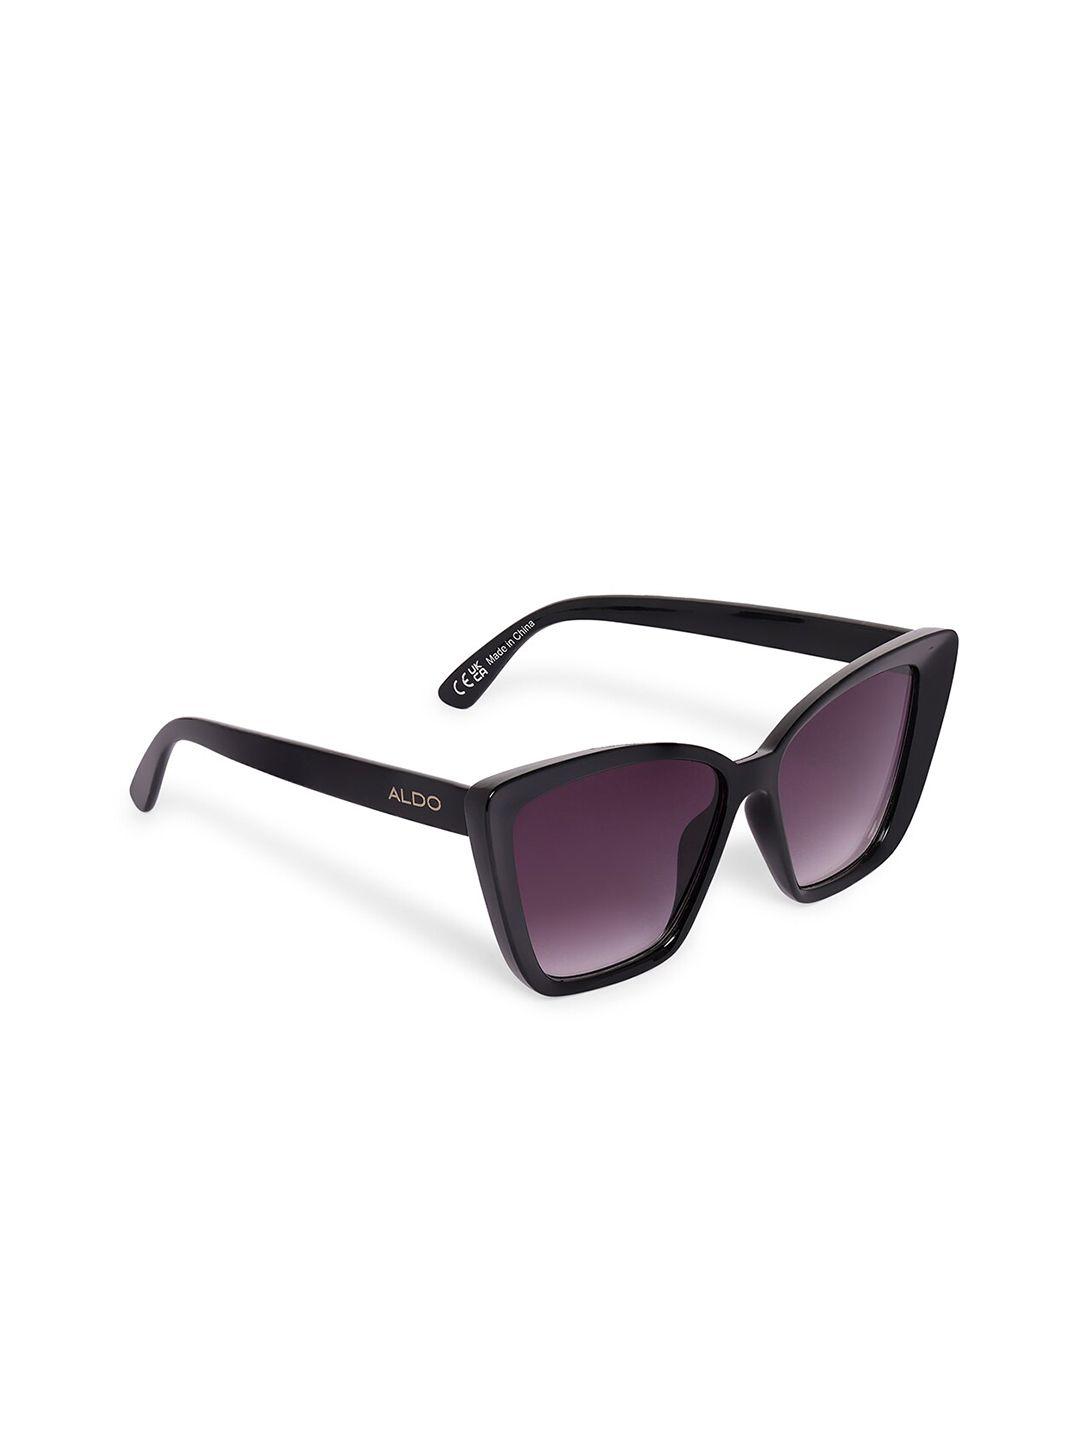 aldo women full rim regular lens butterfly sunglasses- 824566362019